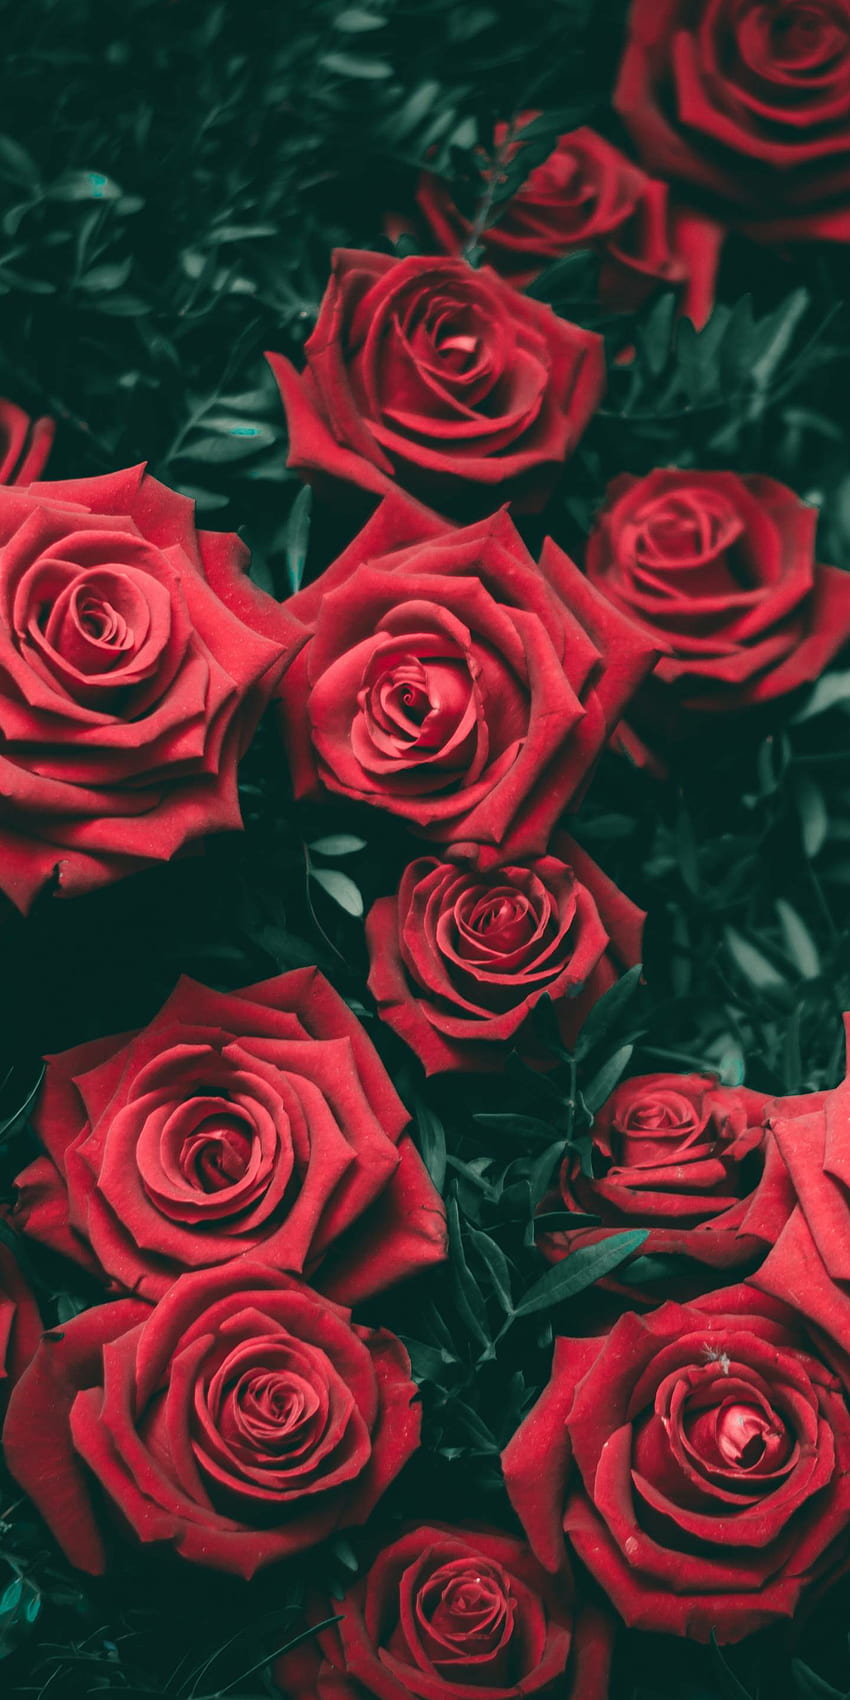 Rose: Hoa hồng với vẻ đẹp sang trọng và đầy lãng mạn đã trở thành biểu tượng của tình yêu và sự thăng hoa. Hãy thưởng thức những hình ảnh tuyệt đẹp về loài hoa này để tràn đầy cảm hứng và yêu đời hơn.